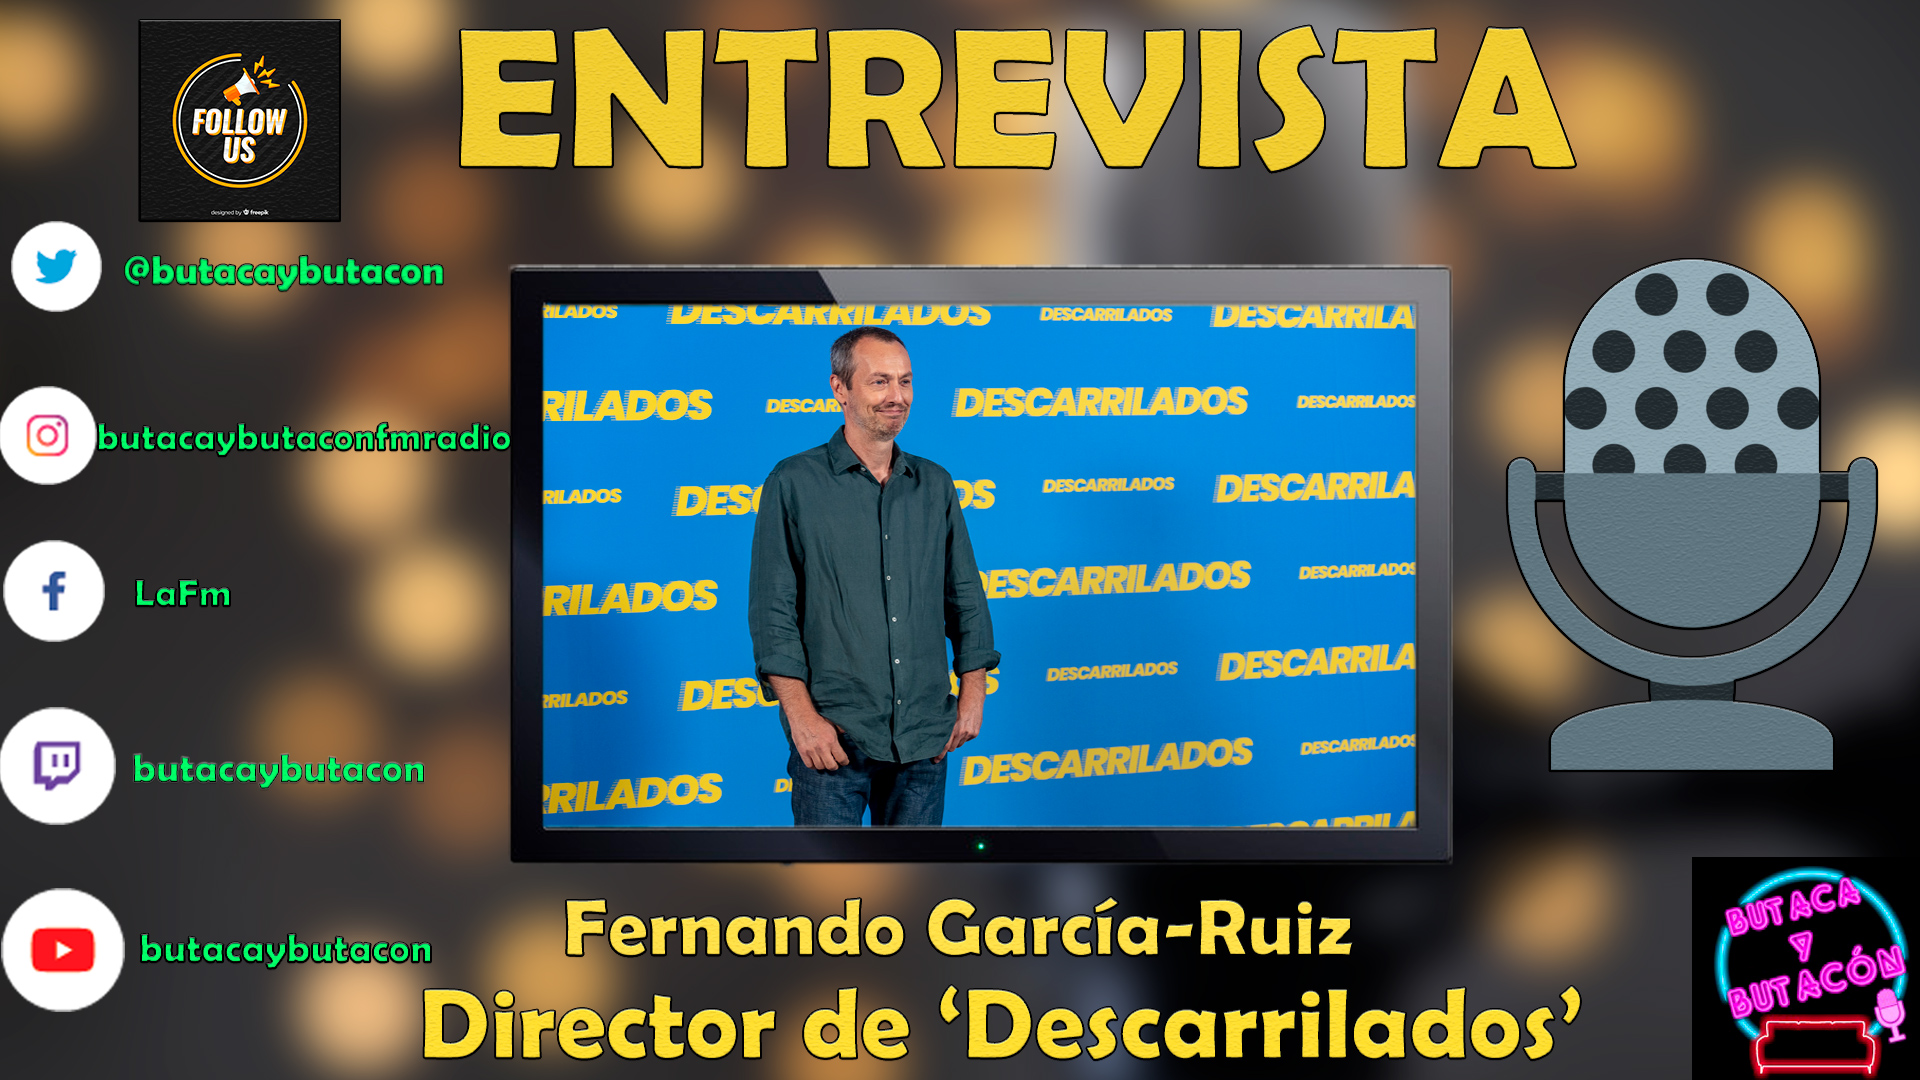 Fer García-Ruiz debuta en la dirección de largometrajes con 'Descarrilados'